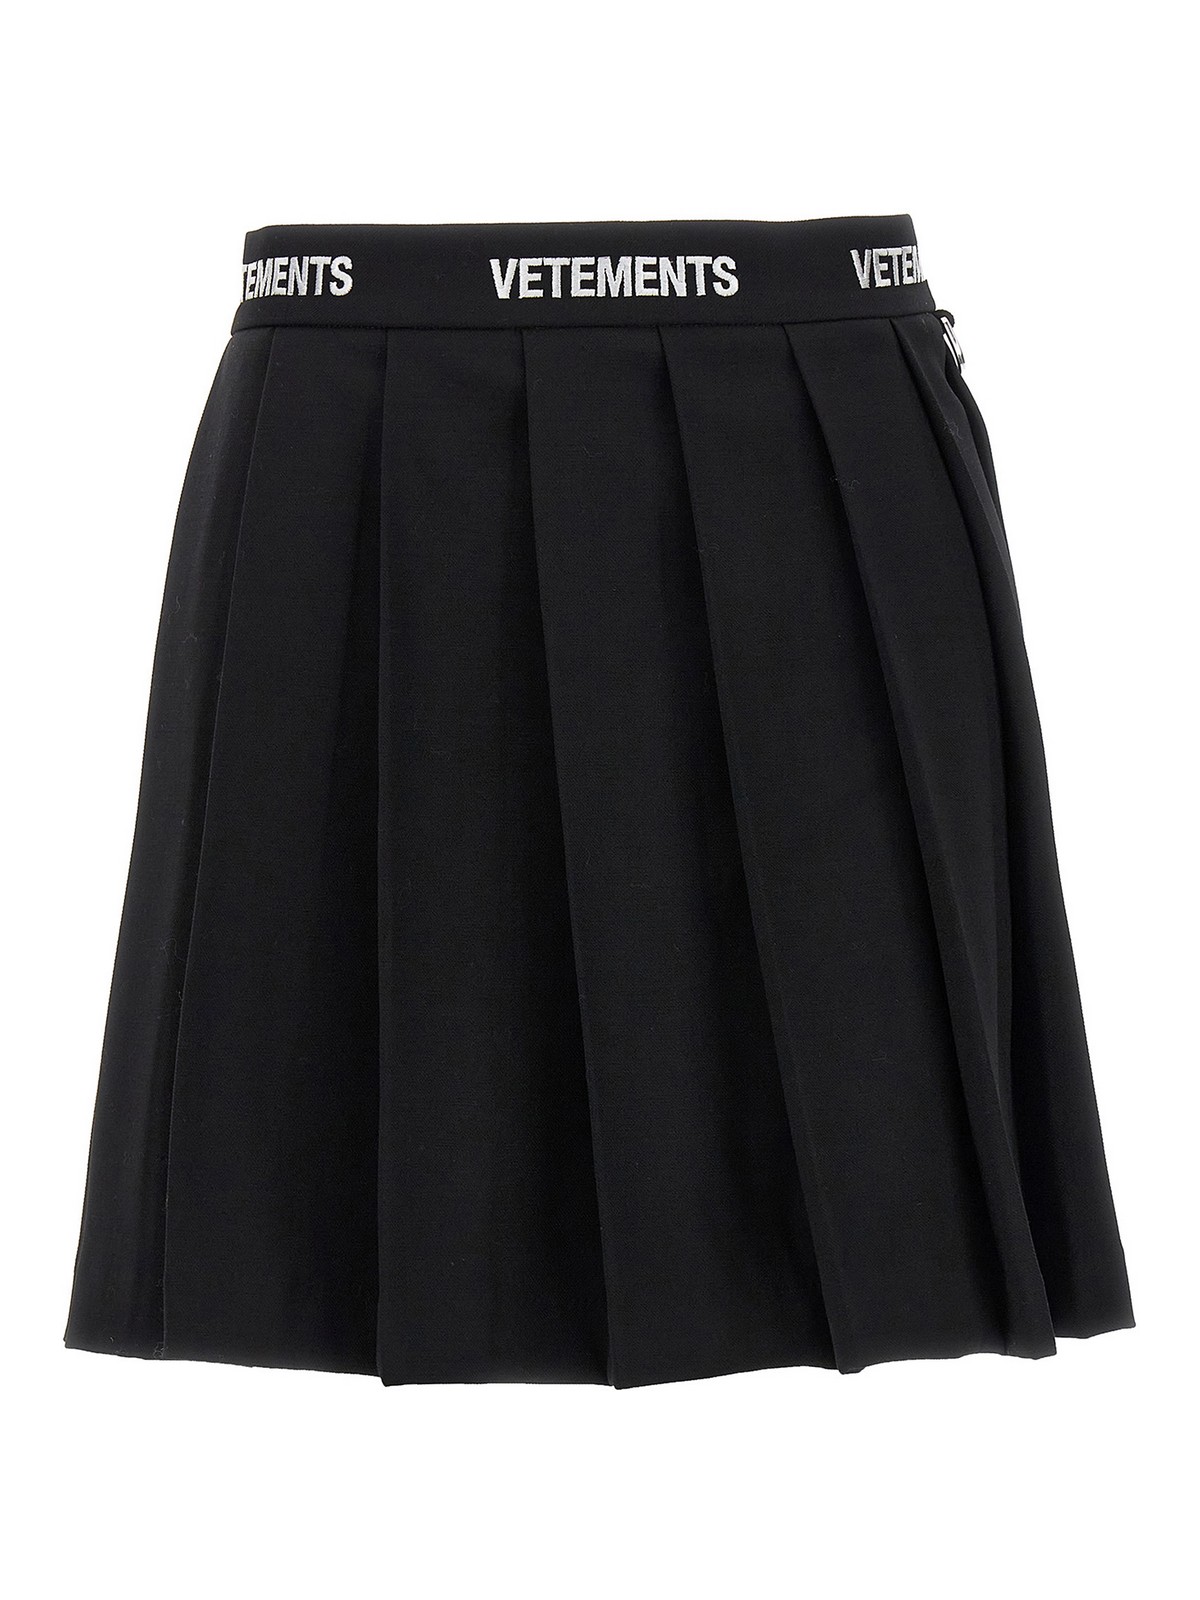 Vetements Logo School Girl Skirt In Negro